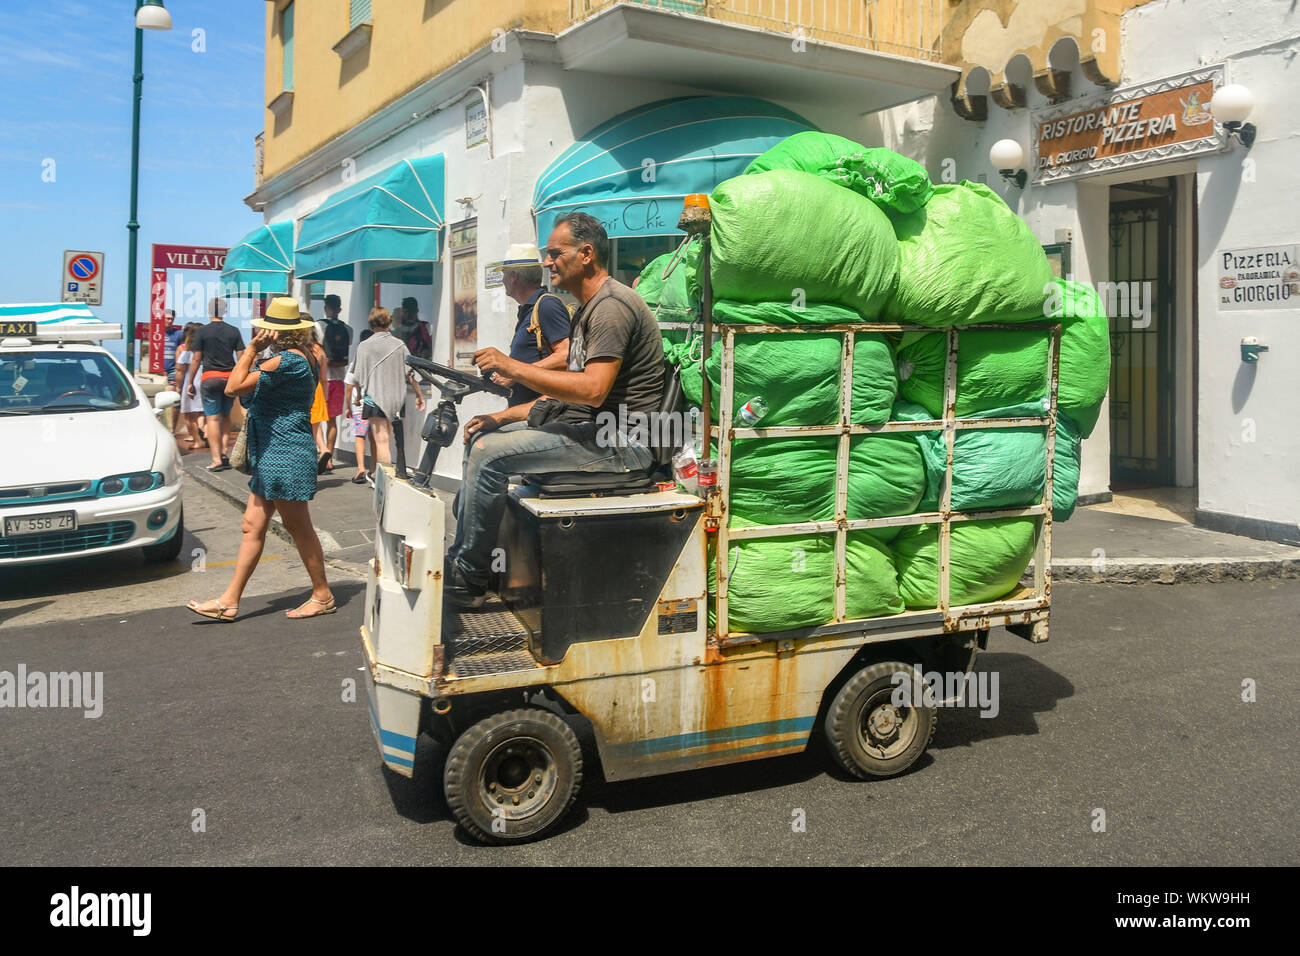 Île de Capri, ITALIE - AOÛT 2019 : Personne qui conduit une petite voiturette électrique transporter des sacs d'ordures par sac de la ville de Capri. Banque D'Images